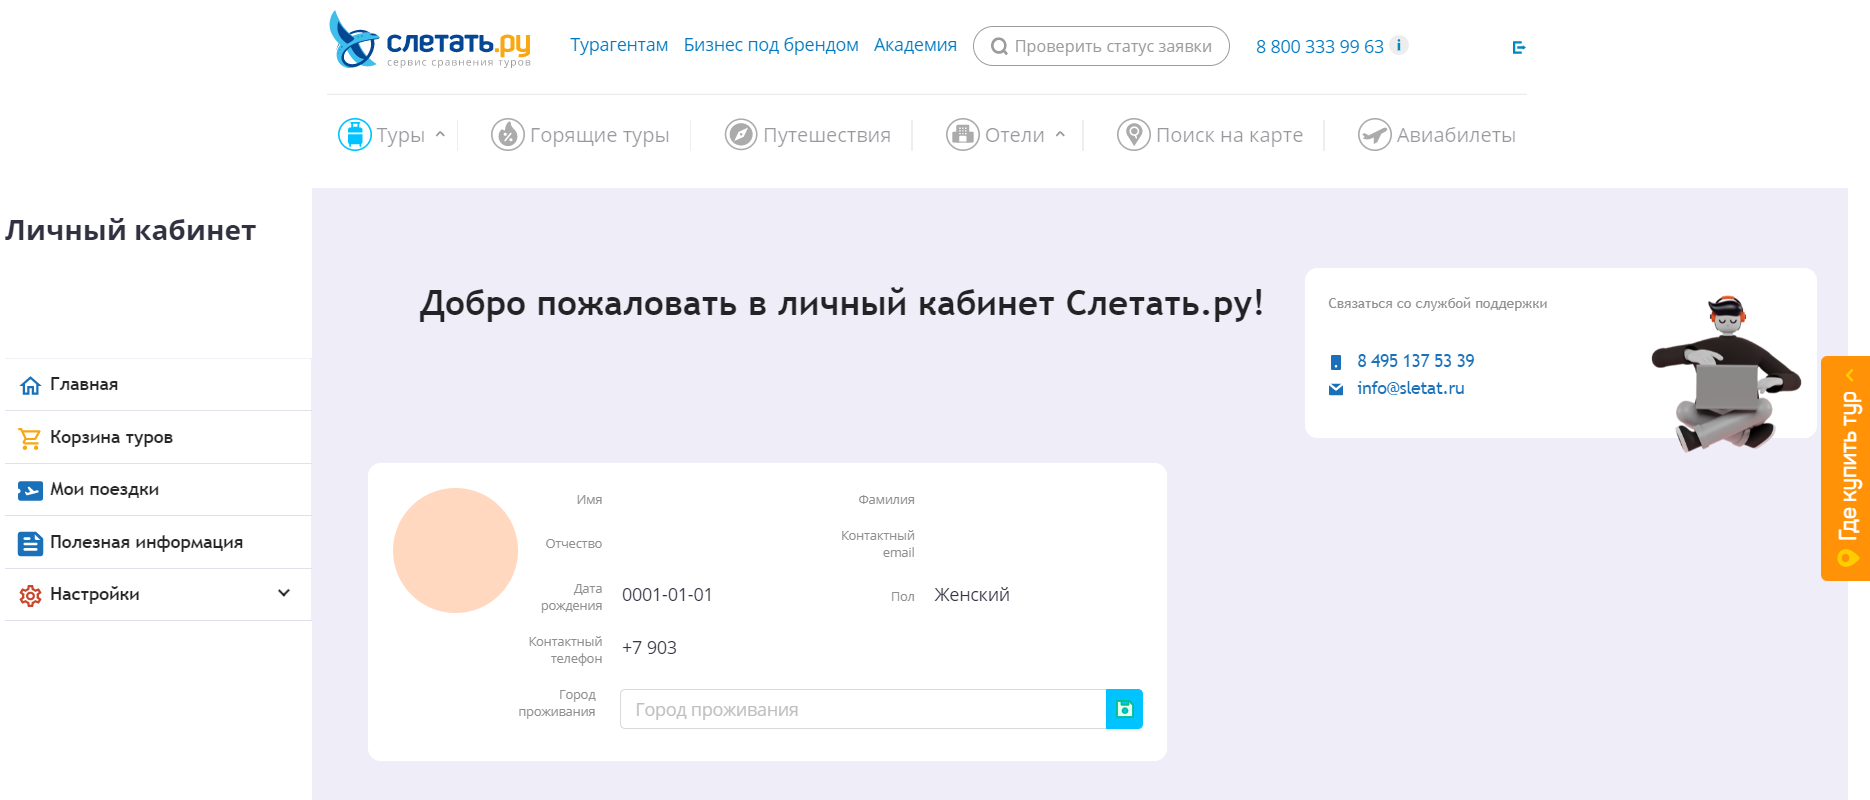 Слетать.ру скриншот личного кабинета